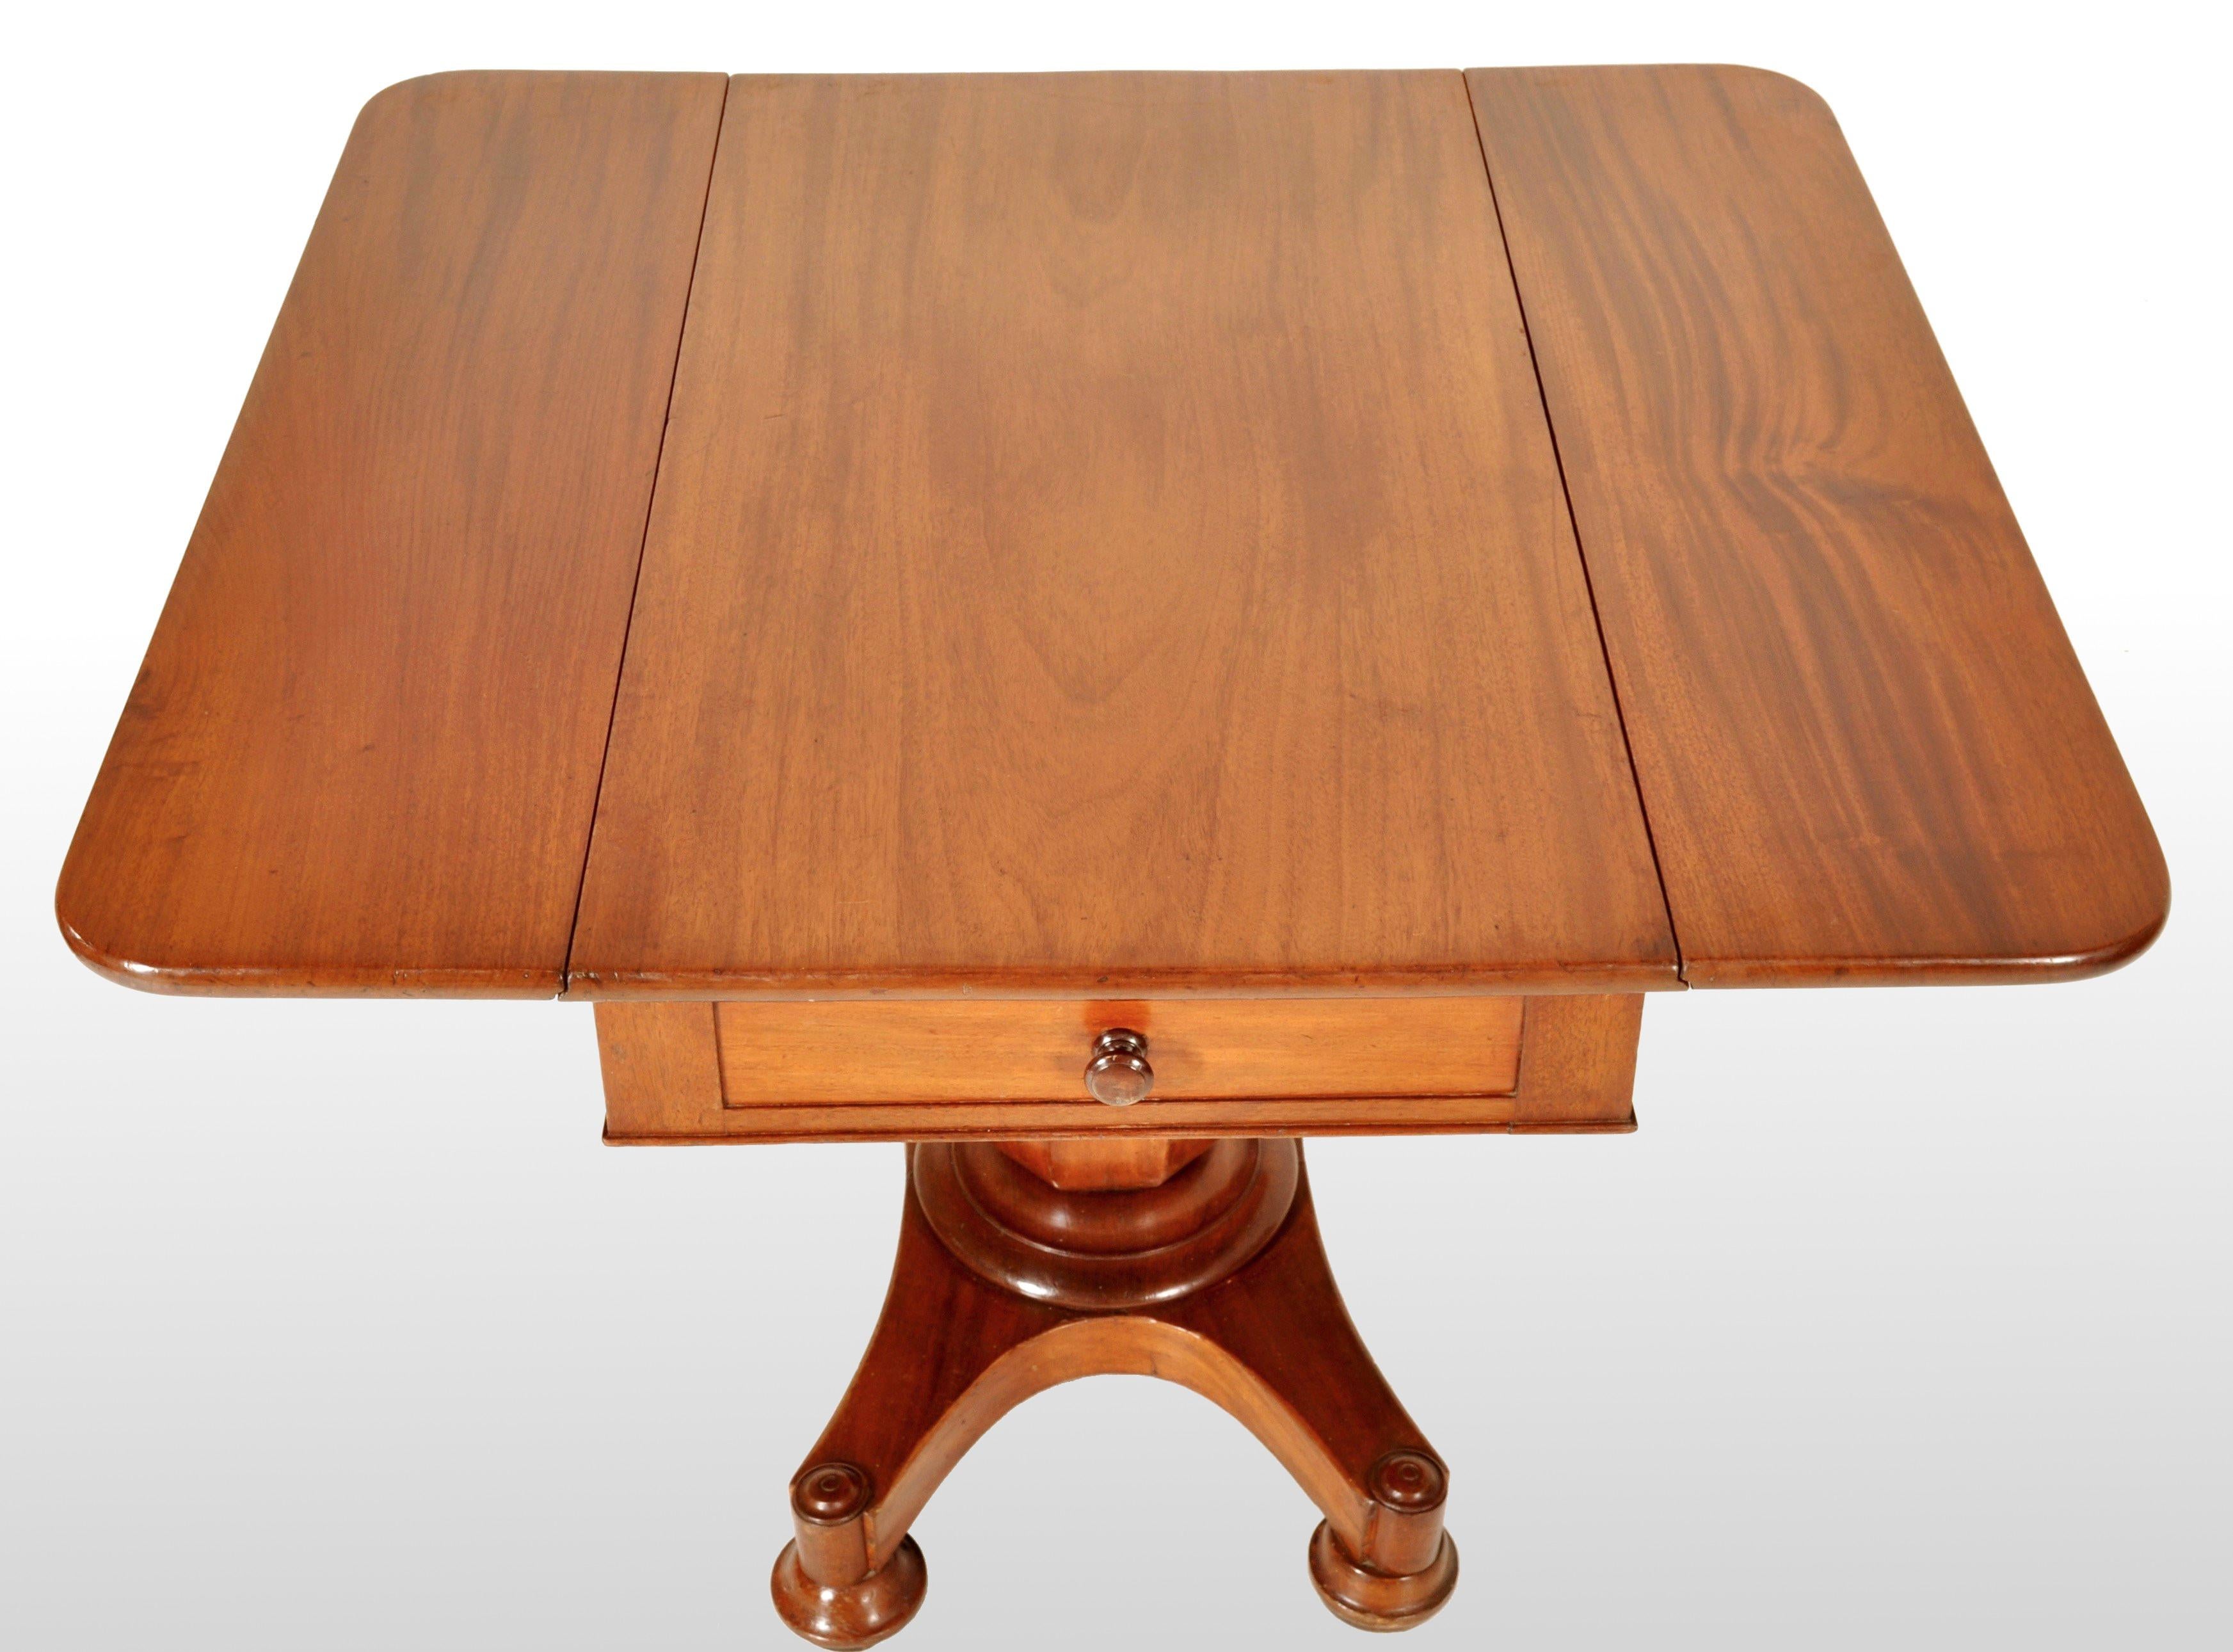 Antiker klassischer amerikanischer Mahagoni-Sockeltisch Pembroke von John Needles aus Baltimore, um 1840. Der Tisch besteht aus gemasertem Mahagoni mit zwei Klapptischen und einer Schublade in der Mitte. Der Tisch steht auf einer balusterförmigen